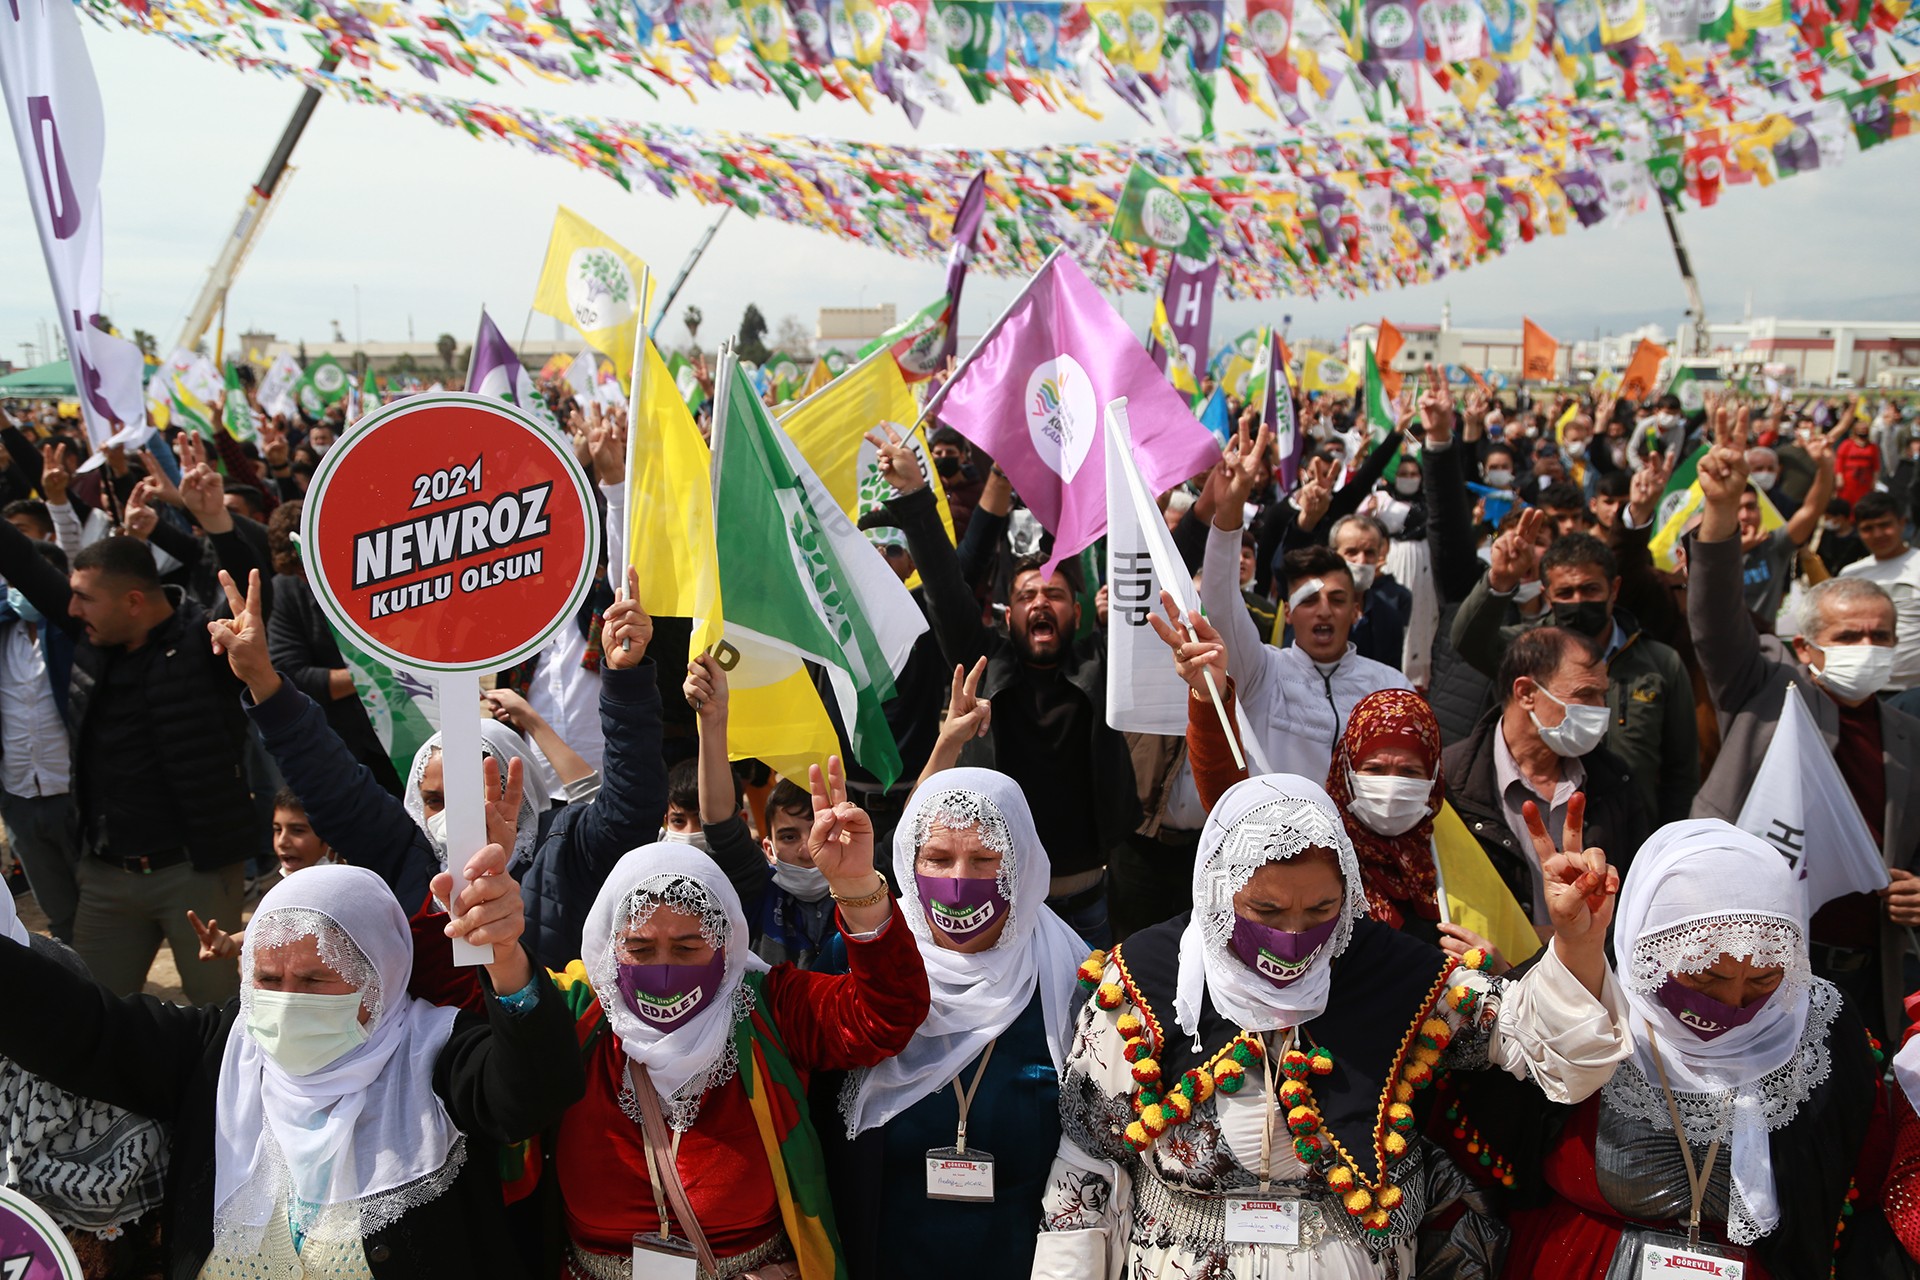 Mersin'deki Newroz kutlamasından bir fotoğraf